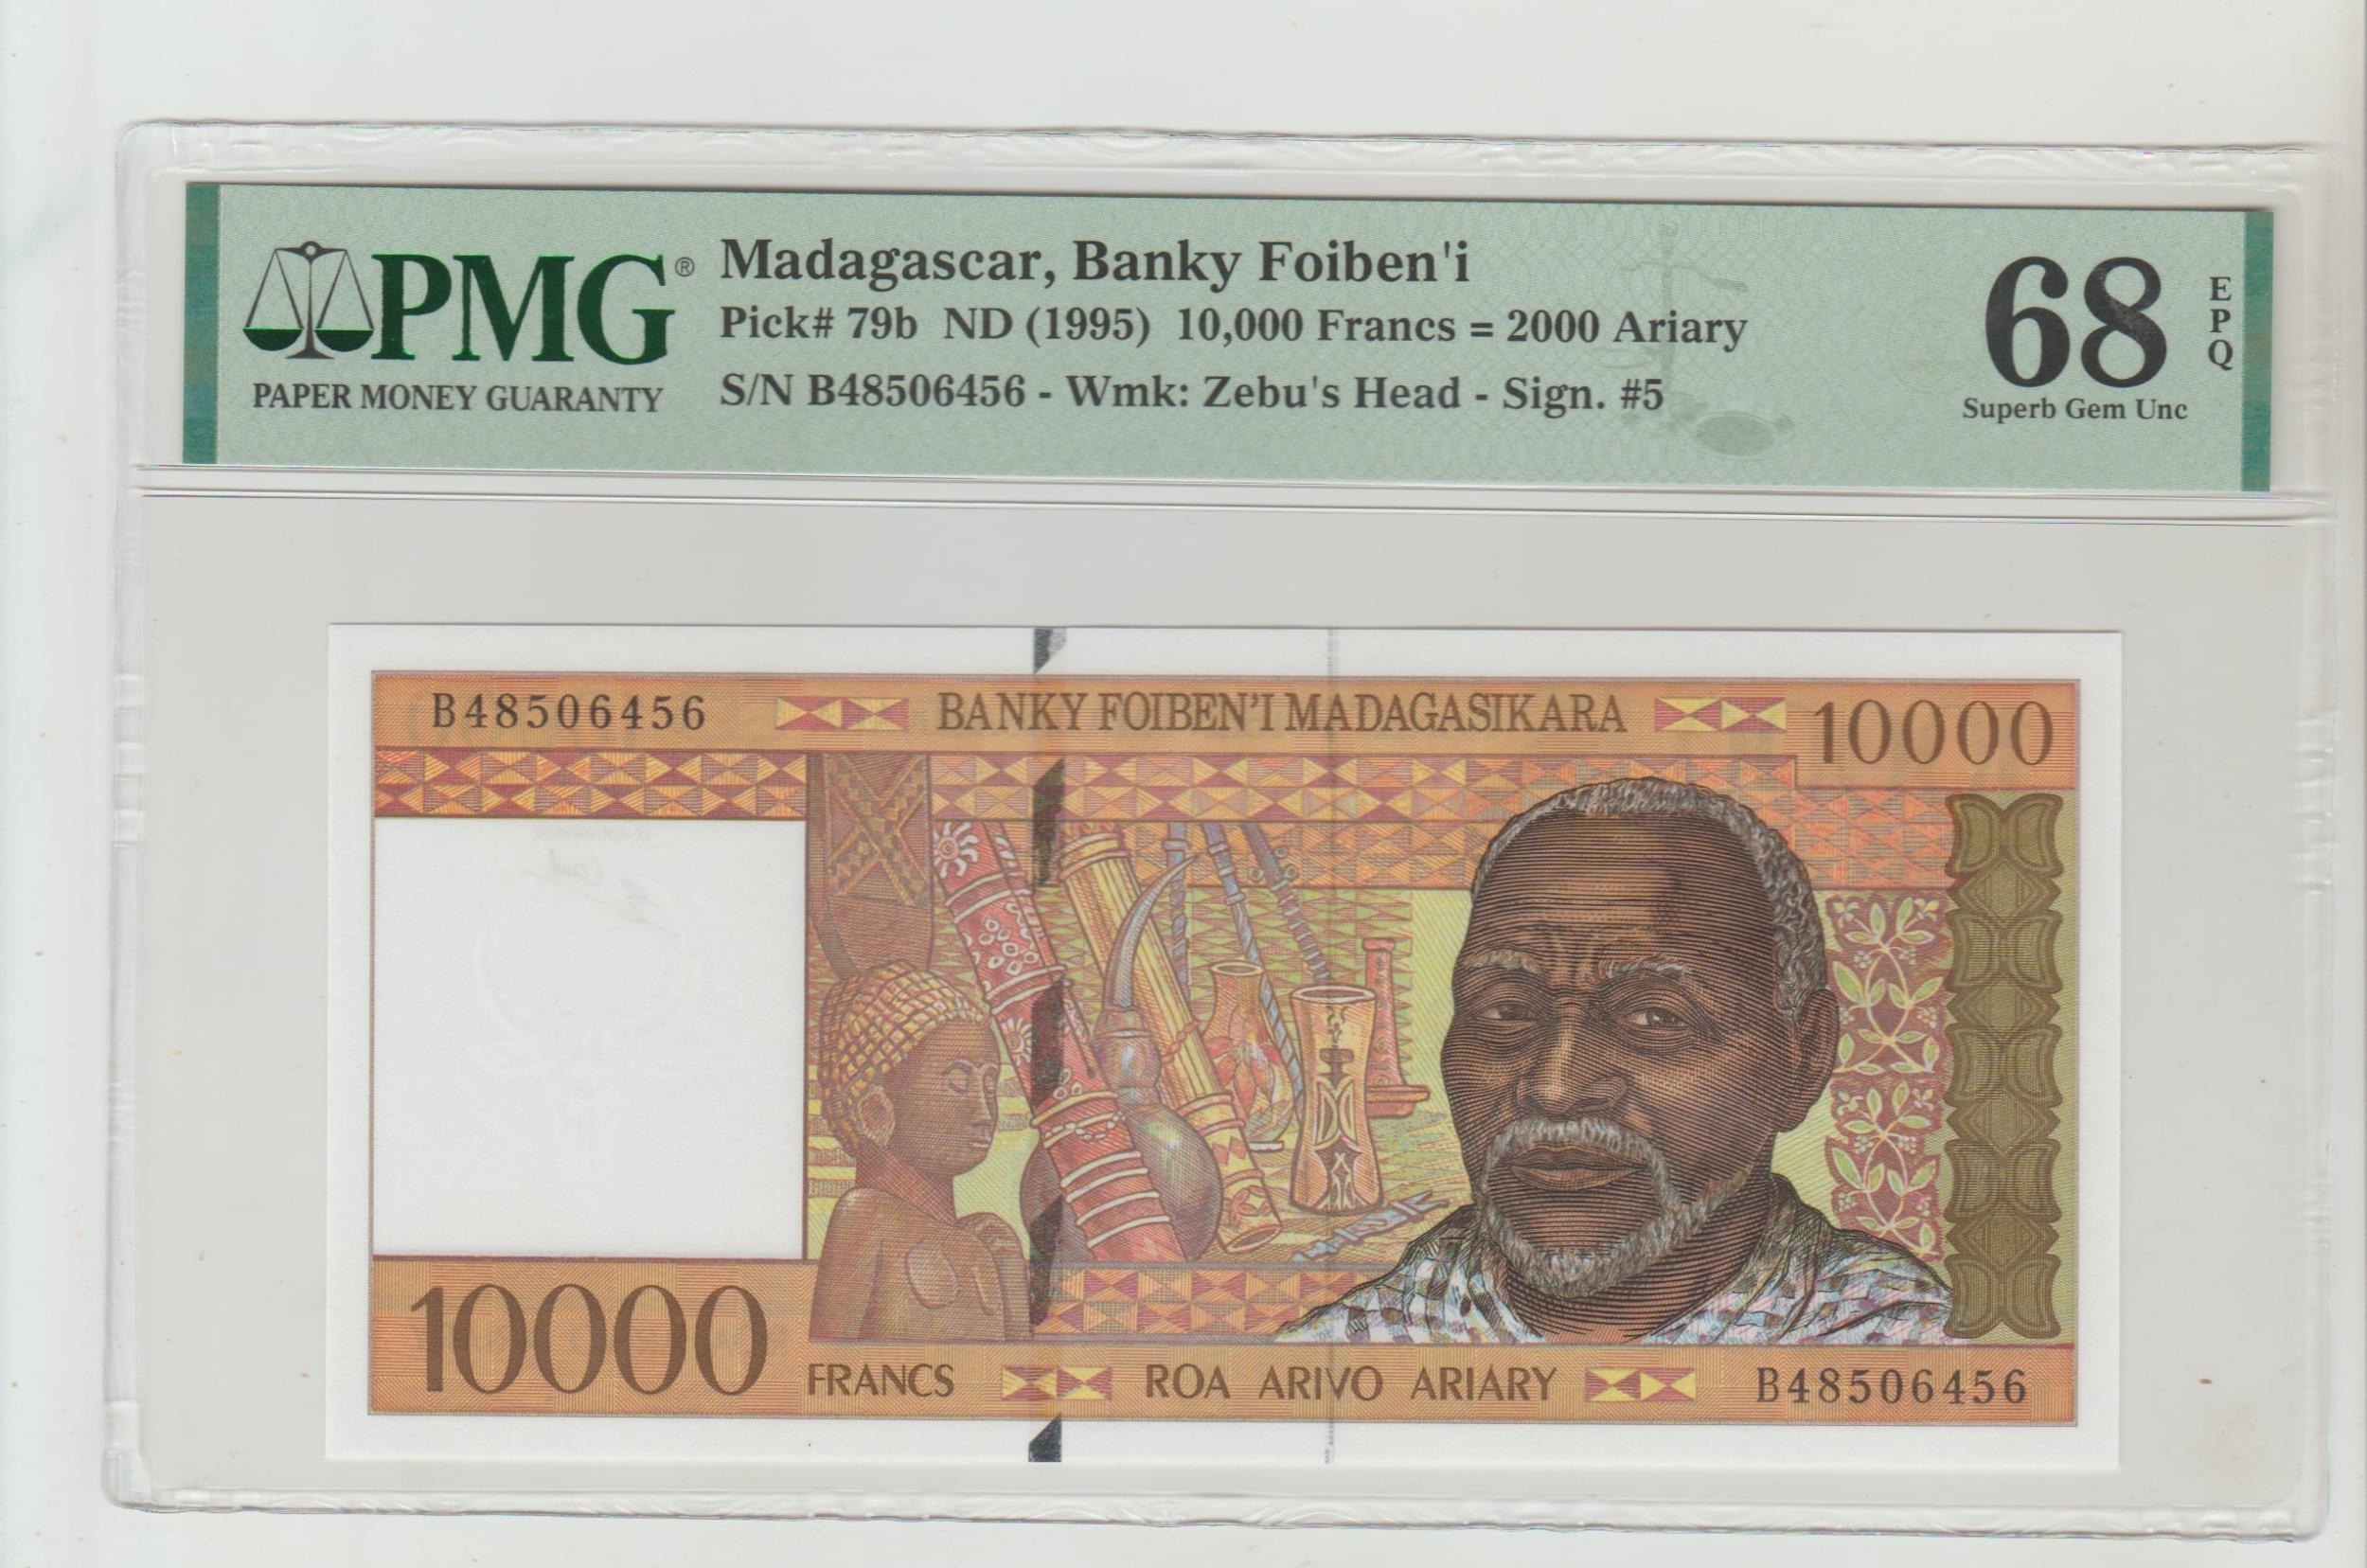 Madagaskar, 10,000 Francs = 2000 Ariary, 1995 year